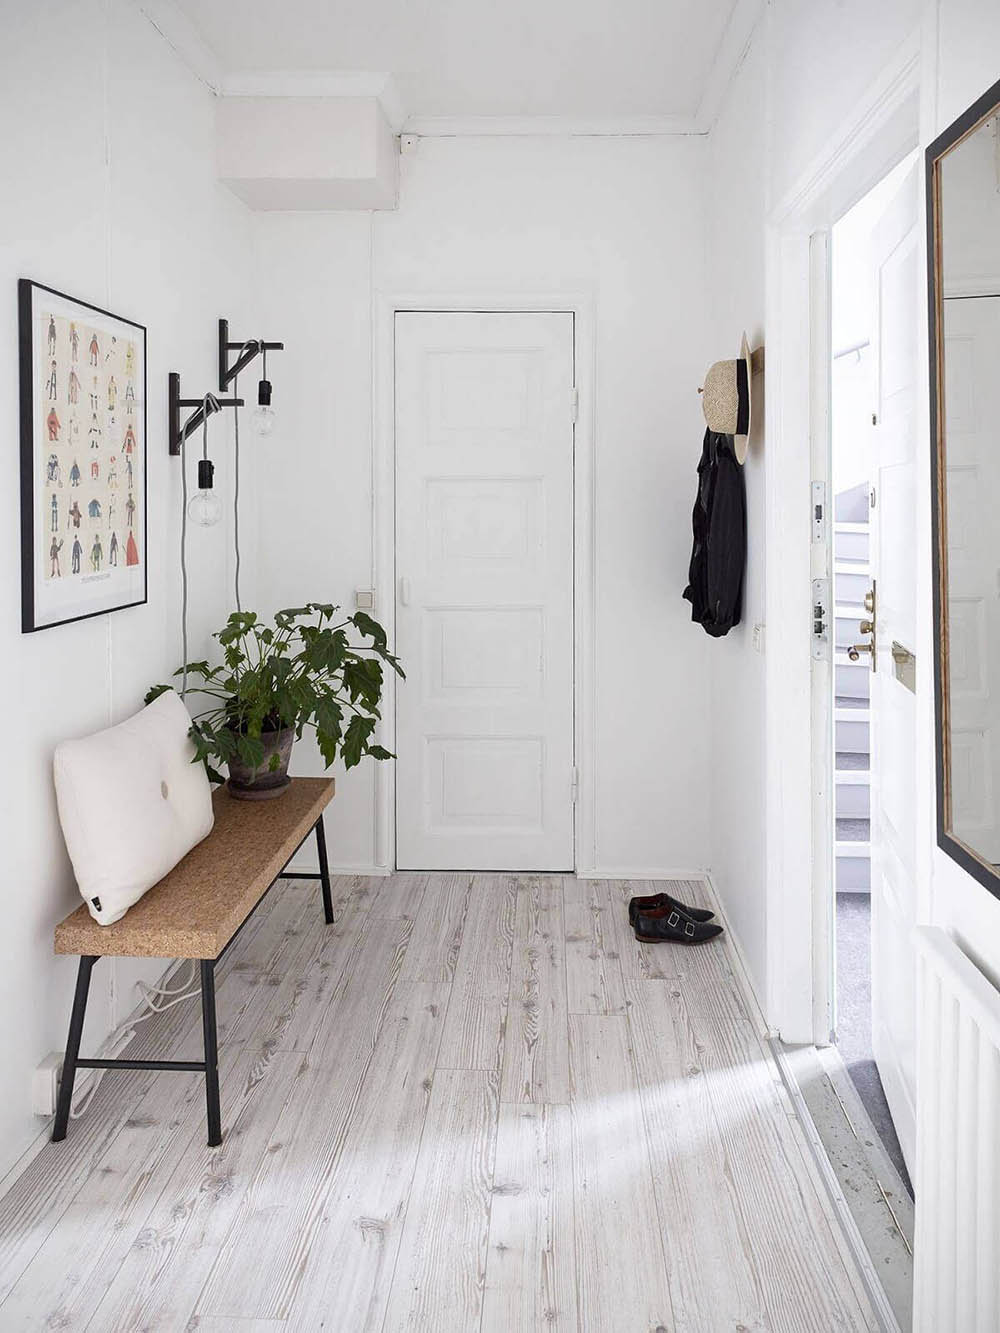 Bạn muốn thiết kế nội thất ngôi nhà theo phong cách Scandinavia?